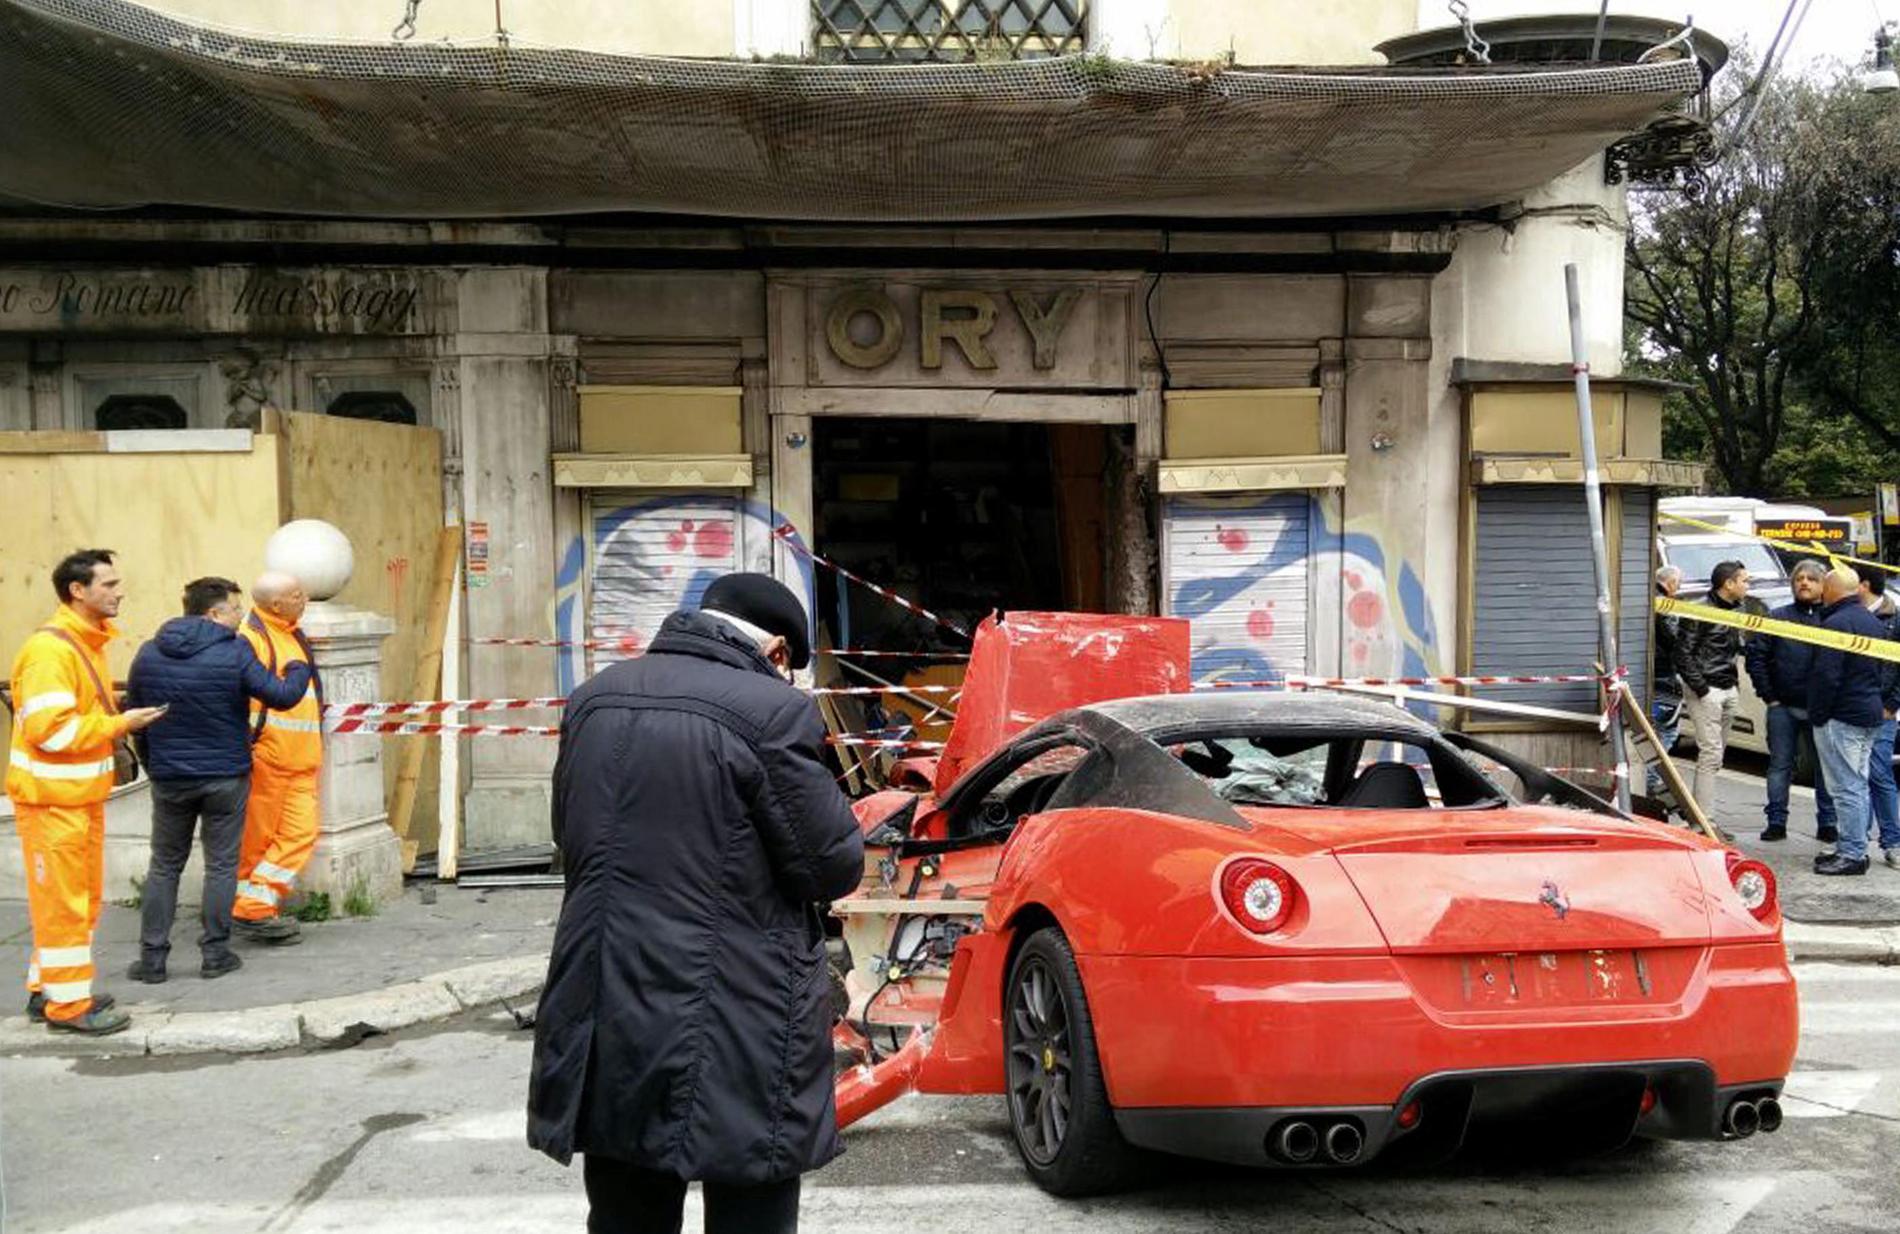 Men resan från garaget blev en mardröm, skriver The Telegraph. Bilen kan köra 0-100km/h på tre sekunder, något som parkeringsbetjänten fick uppleva lite väl mycket. Resan slutade med en totalkvaddad bil i en lokal affär. 
– Jag blev förvirrad, istället för att bromsa råkade jag gasa, sa parkeringsbetjänten till polisen enligt italienska Corriere della Sera.